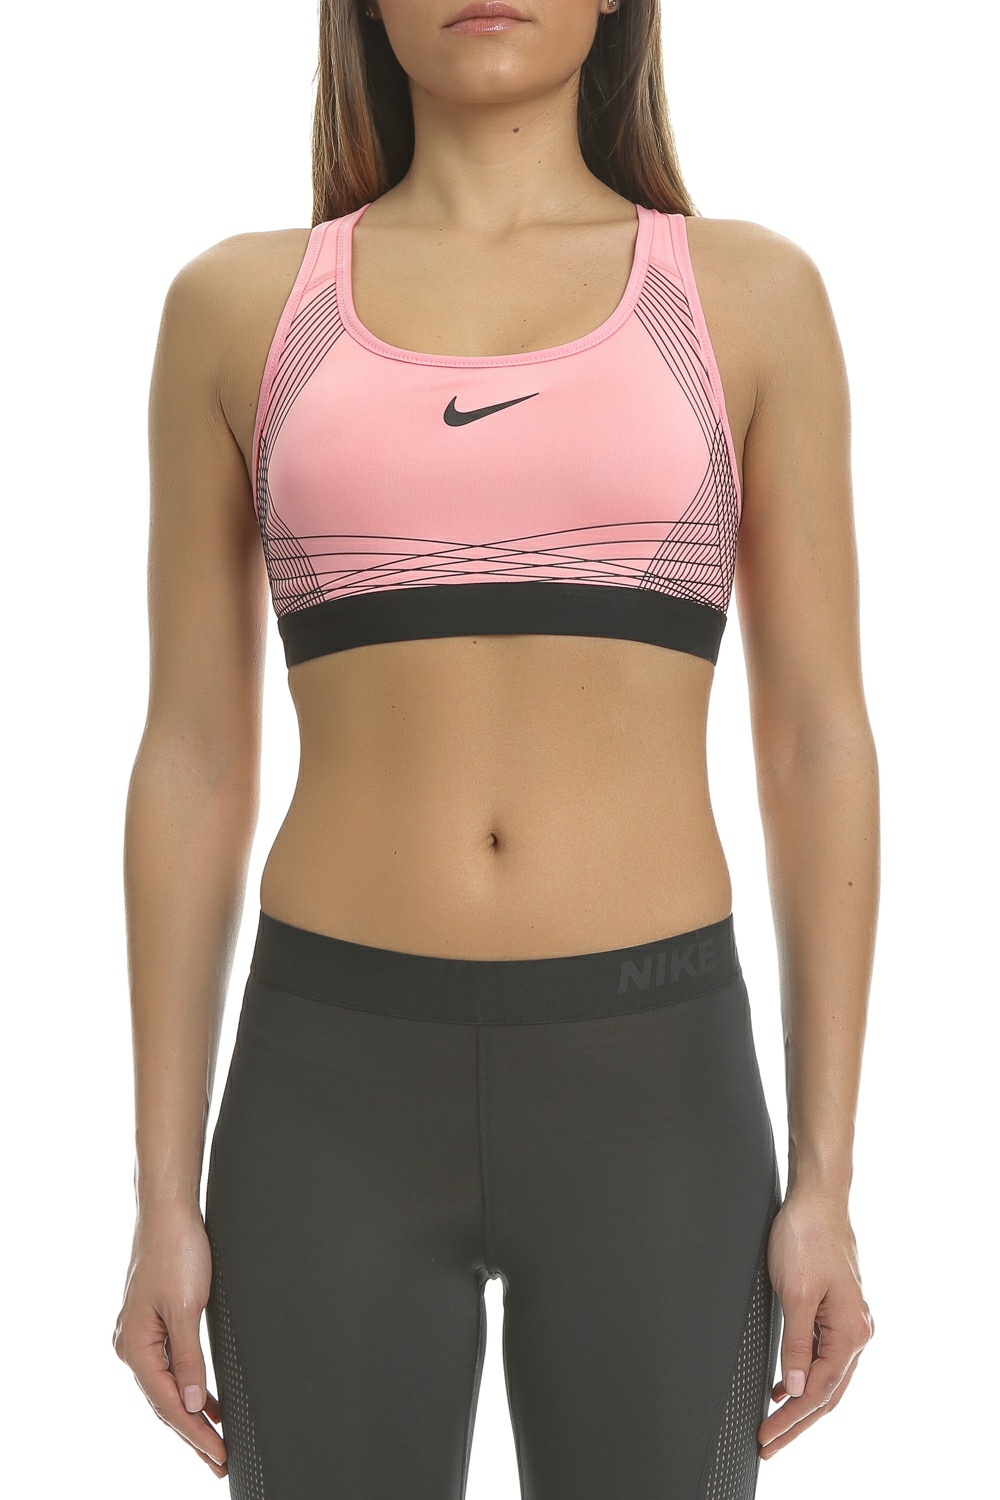 NIKE - Γυναικείο αθλητικό μπουστάκι Nike PRO HYPR CLSSC ροζ - μαύρο Γυναικεία/Ρούχα/Αθλητικά/Μπουστάκια